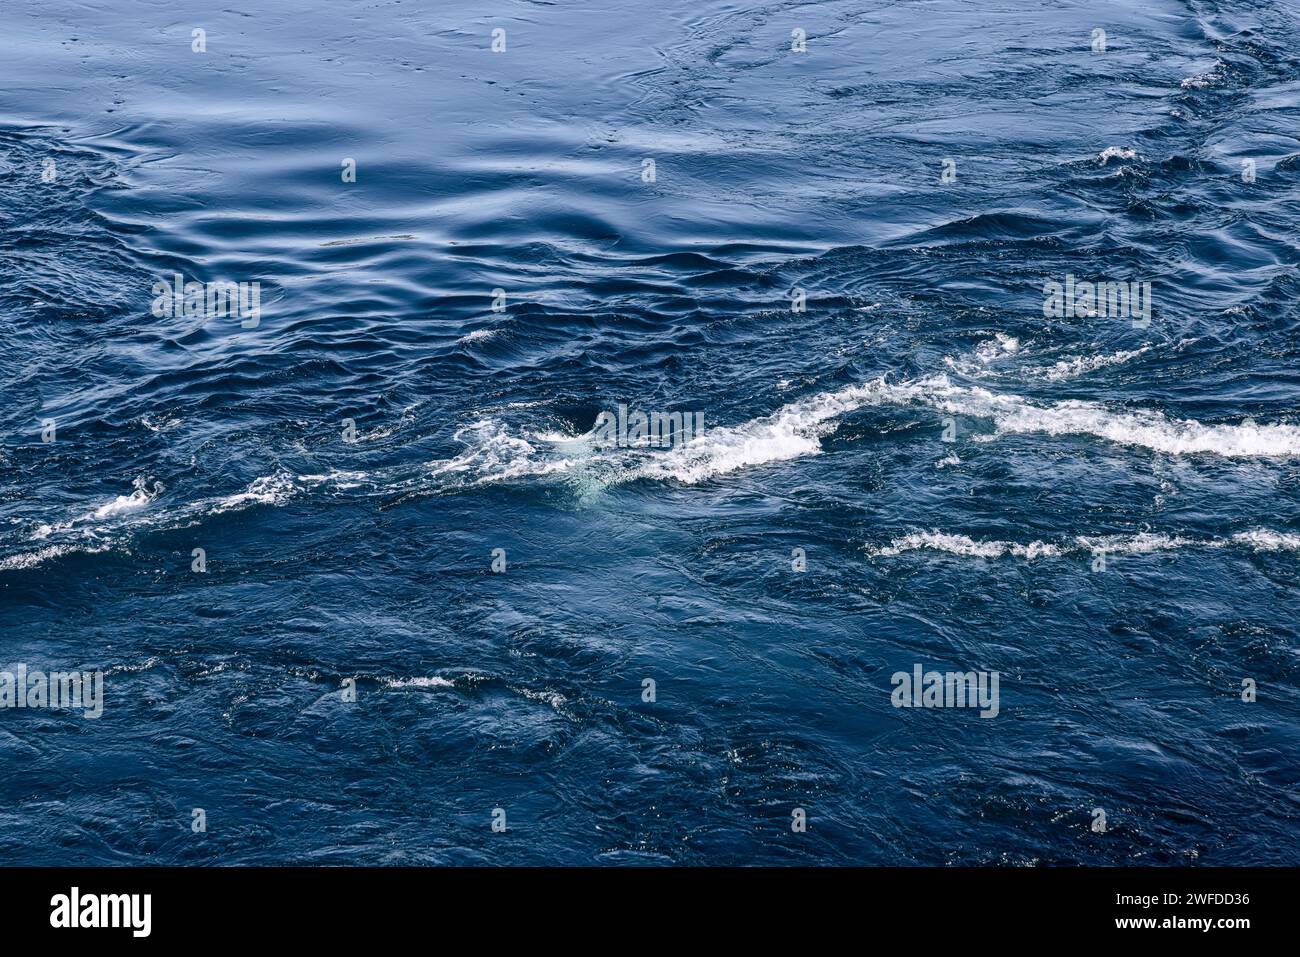 Die gewaltigen Gezeitenströmungen von Saltstraumen ziehen sich durch das Wasser und schaffen eine atemberaubende, strukturierte Oberfläche aus faszinierenden Wirbeln und Wirbeln Stockfoto